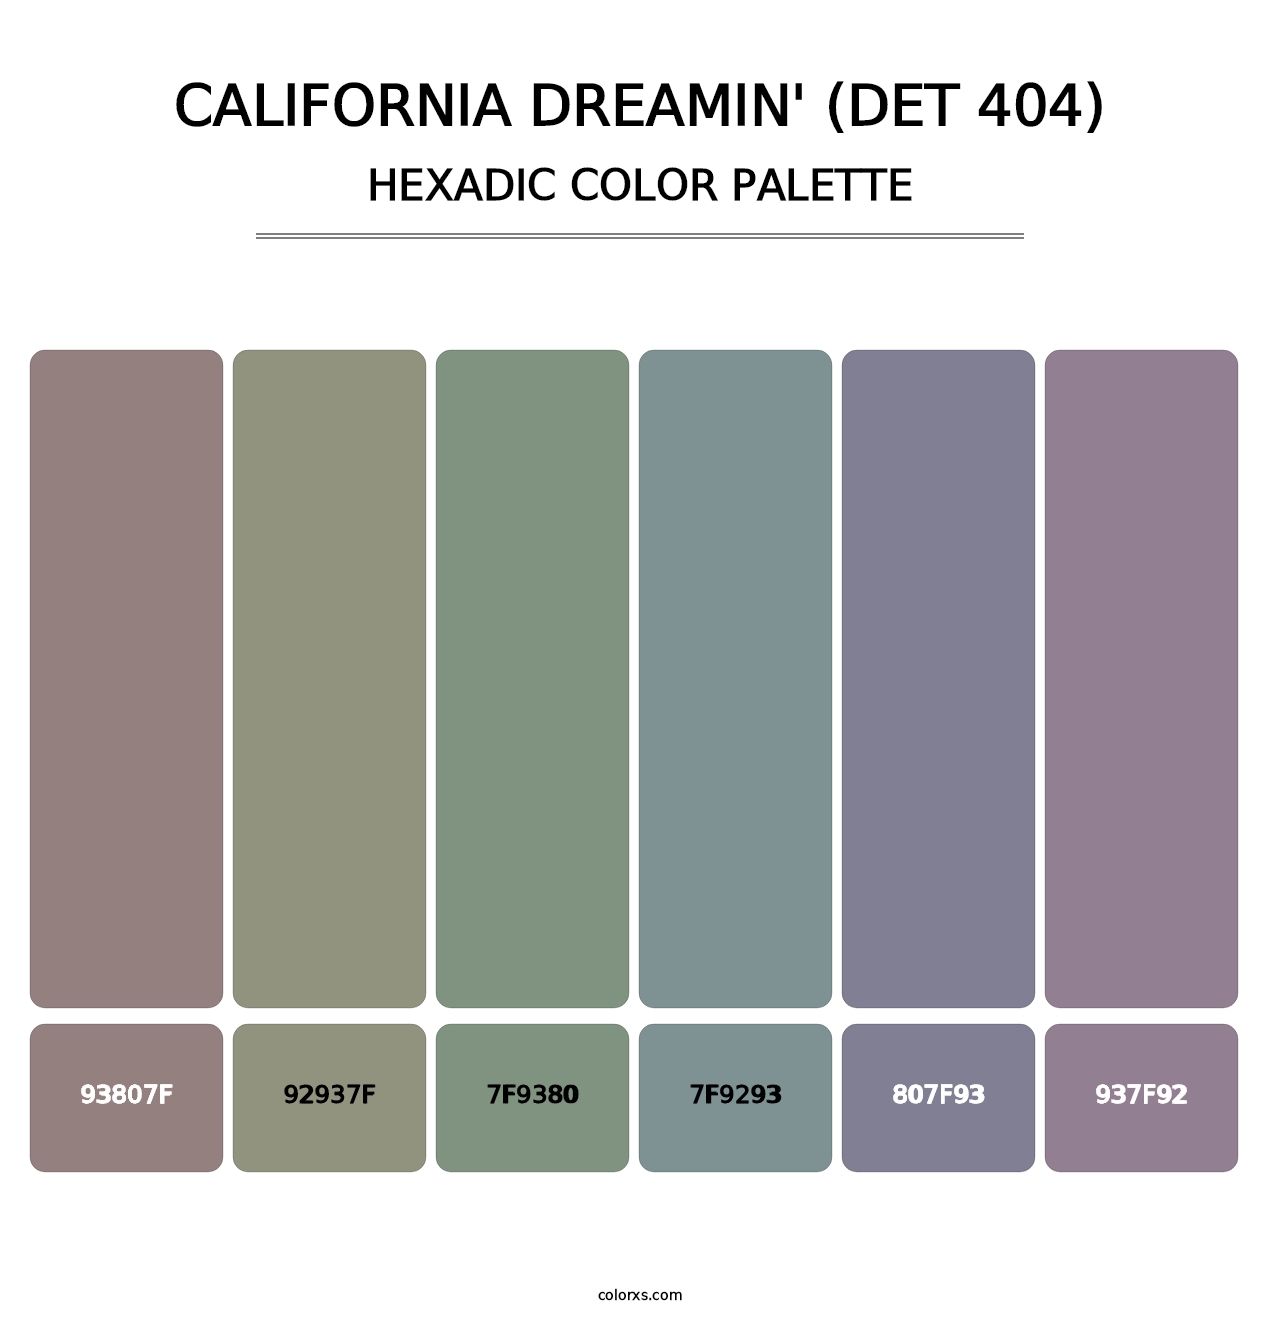 California Dreamin' (DET 404) - Hexadic Color Palette